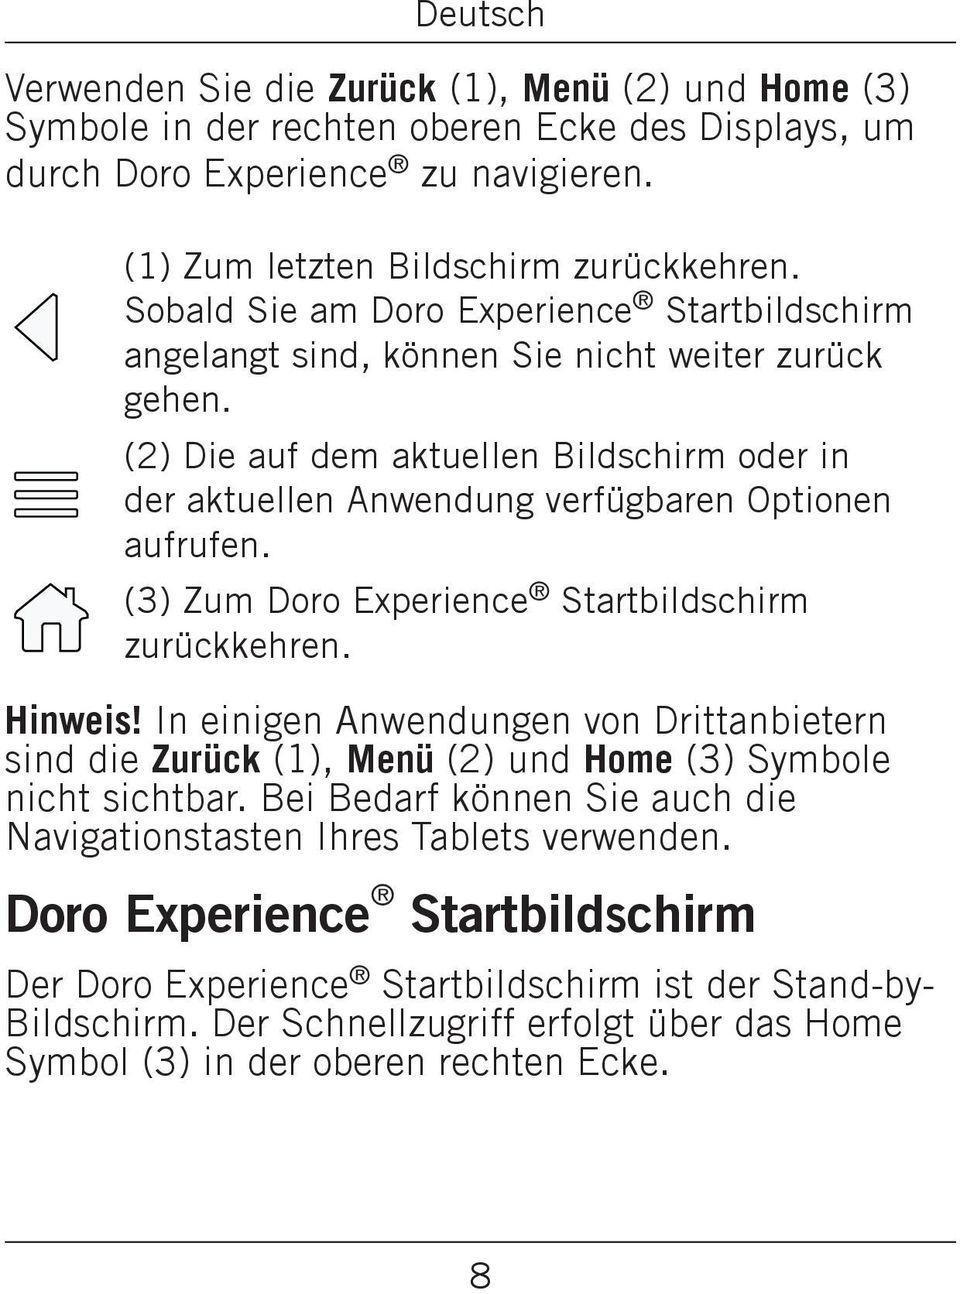 (3) Zum Doro Experience Startbildschirm zurückkehren. Hinweis! In einigen Anwendungen von Drittanbietern sind die Zurück (1), Menü (2) und Home (3) Symbole nicht sichtbar.